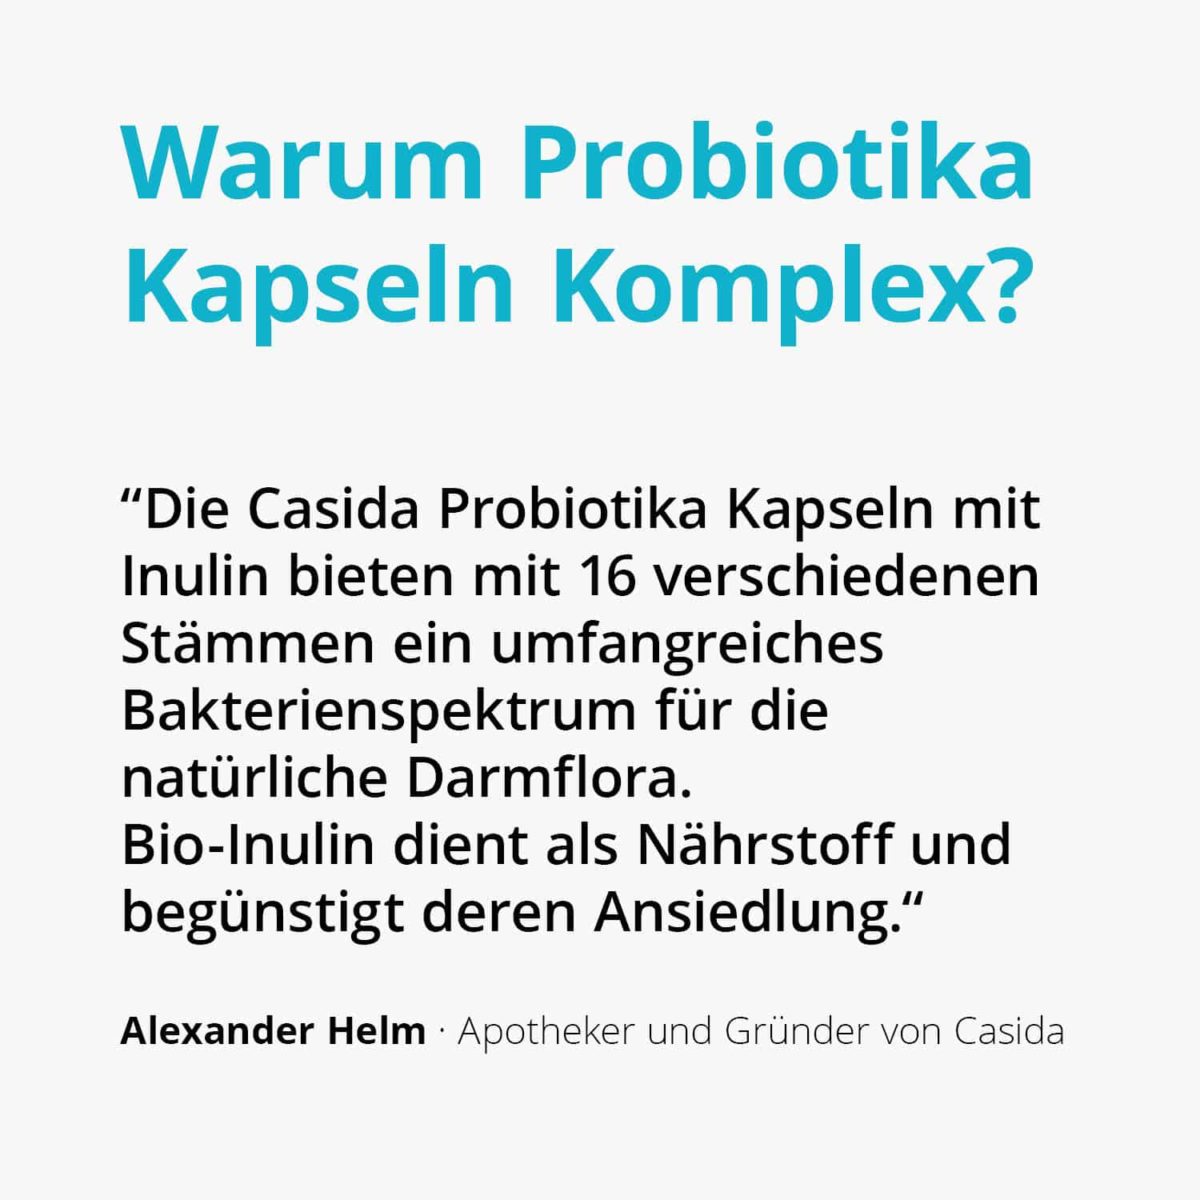 Casida Probiotika Kapseln Komplex + Inulin – 120 Stk. 14446656 PZN Apotheke Darmflora Darmmikrobiota Darmsanierung2